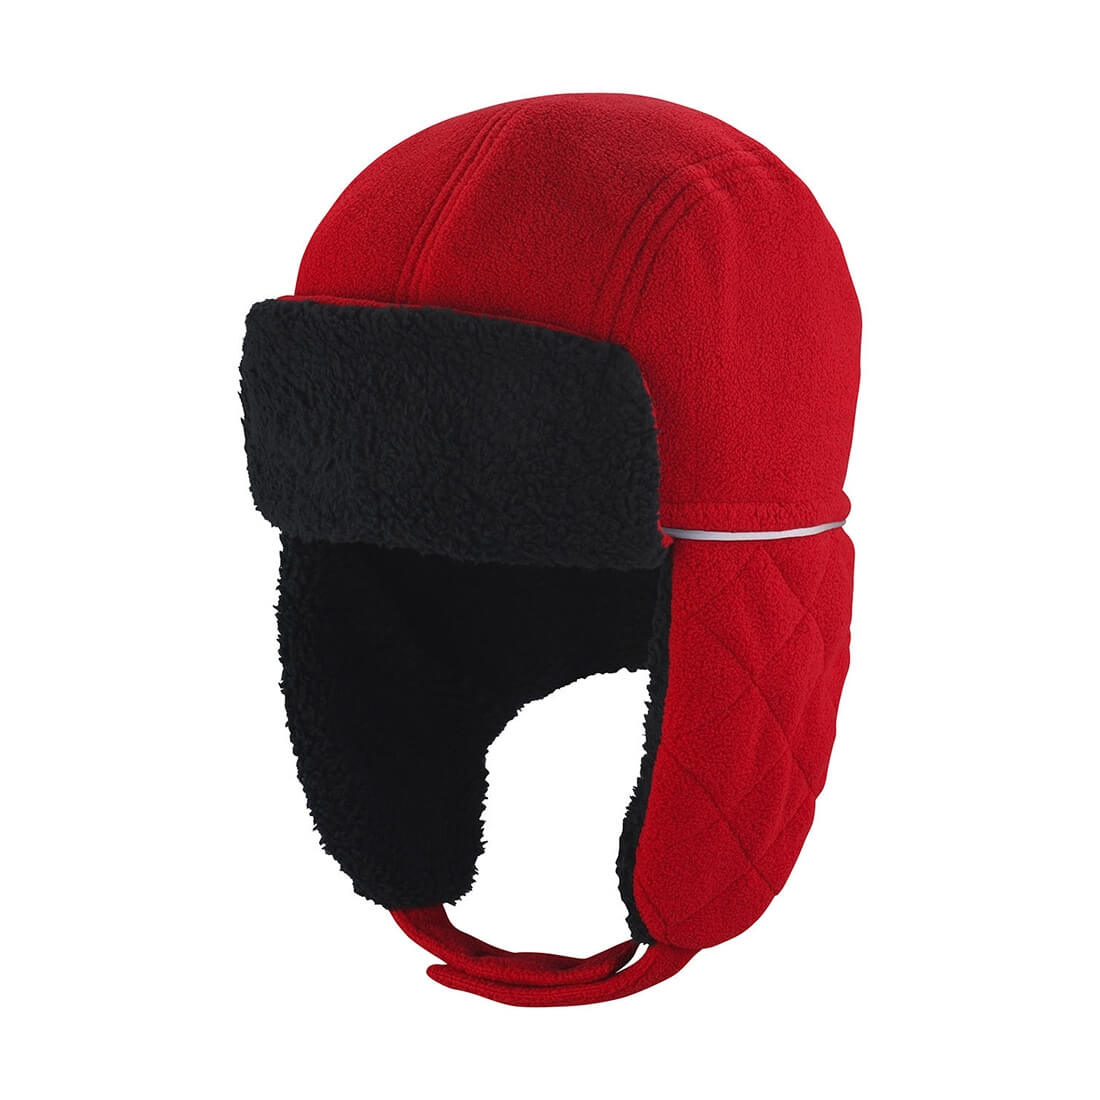 Ocean Trapper Hat - Les vêtements de protection